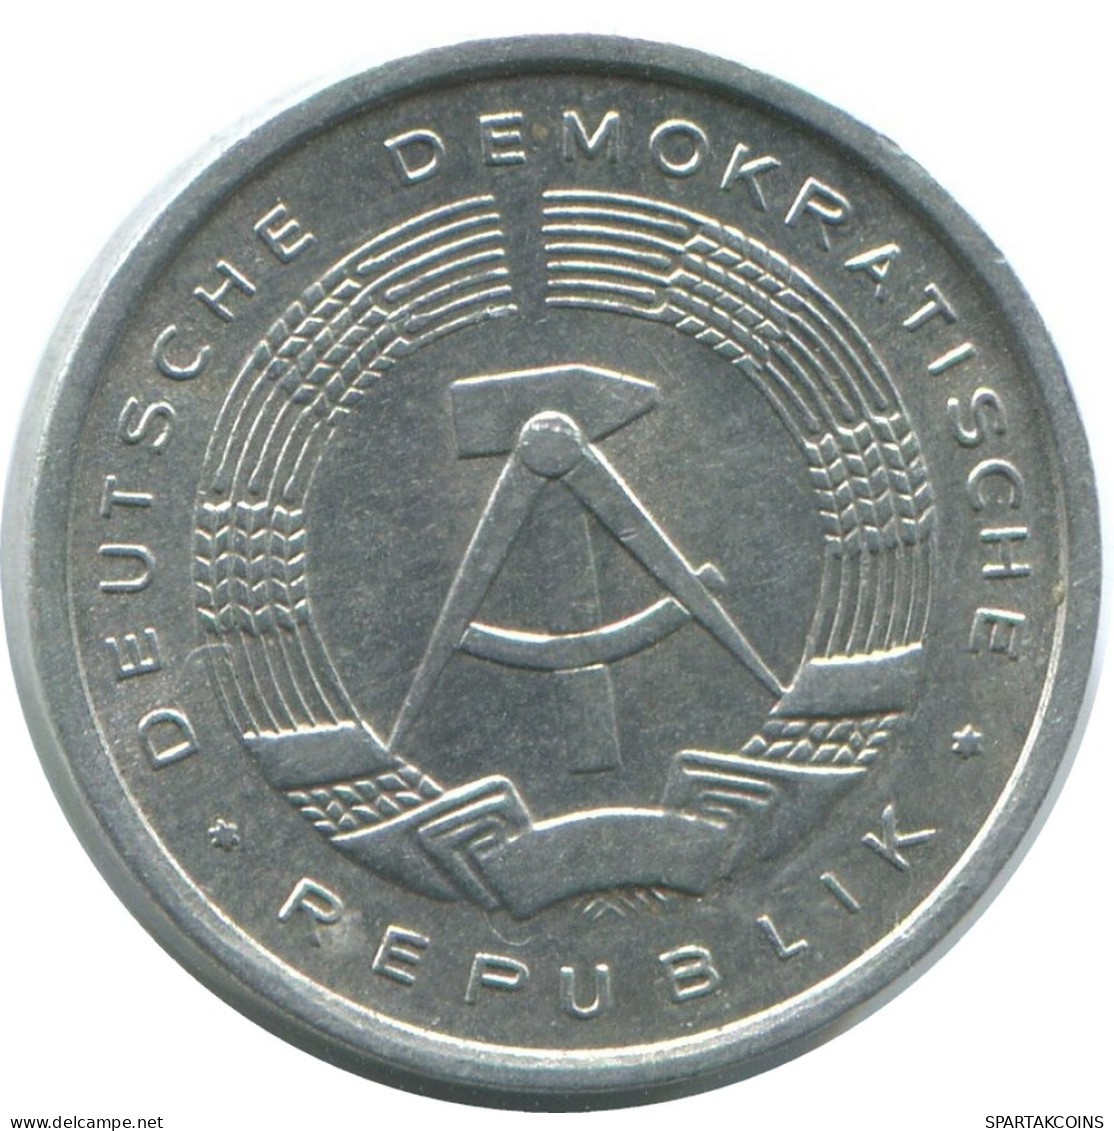 1 PFENNIG 1980 A DDR EAST ALEMANIA Moneda GERMANY #AE059.E - 1 Pfennig